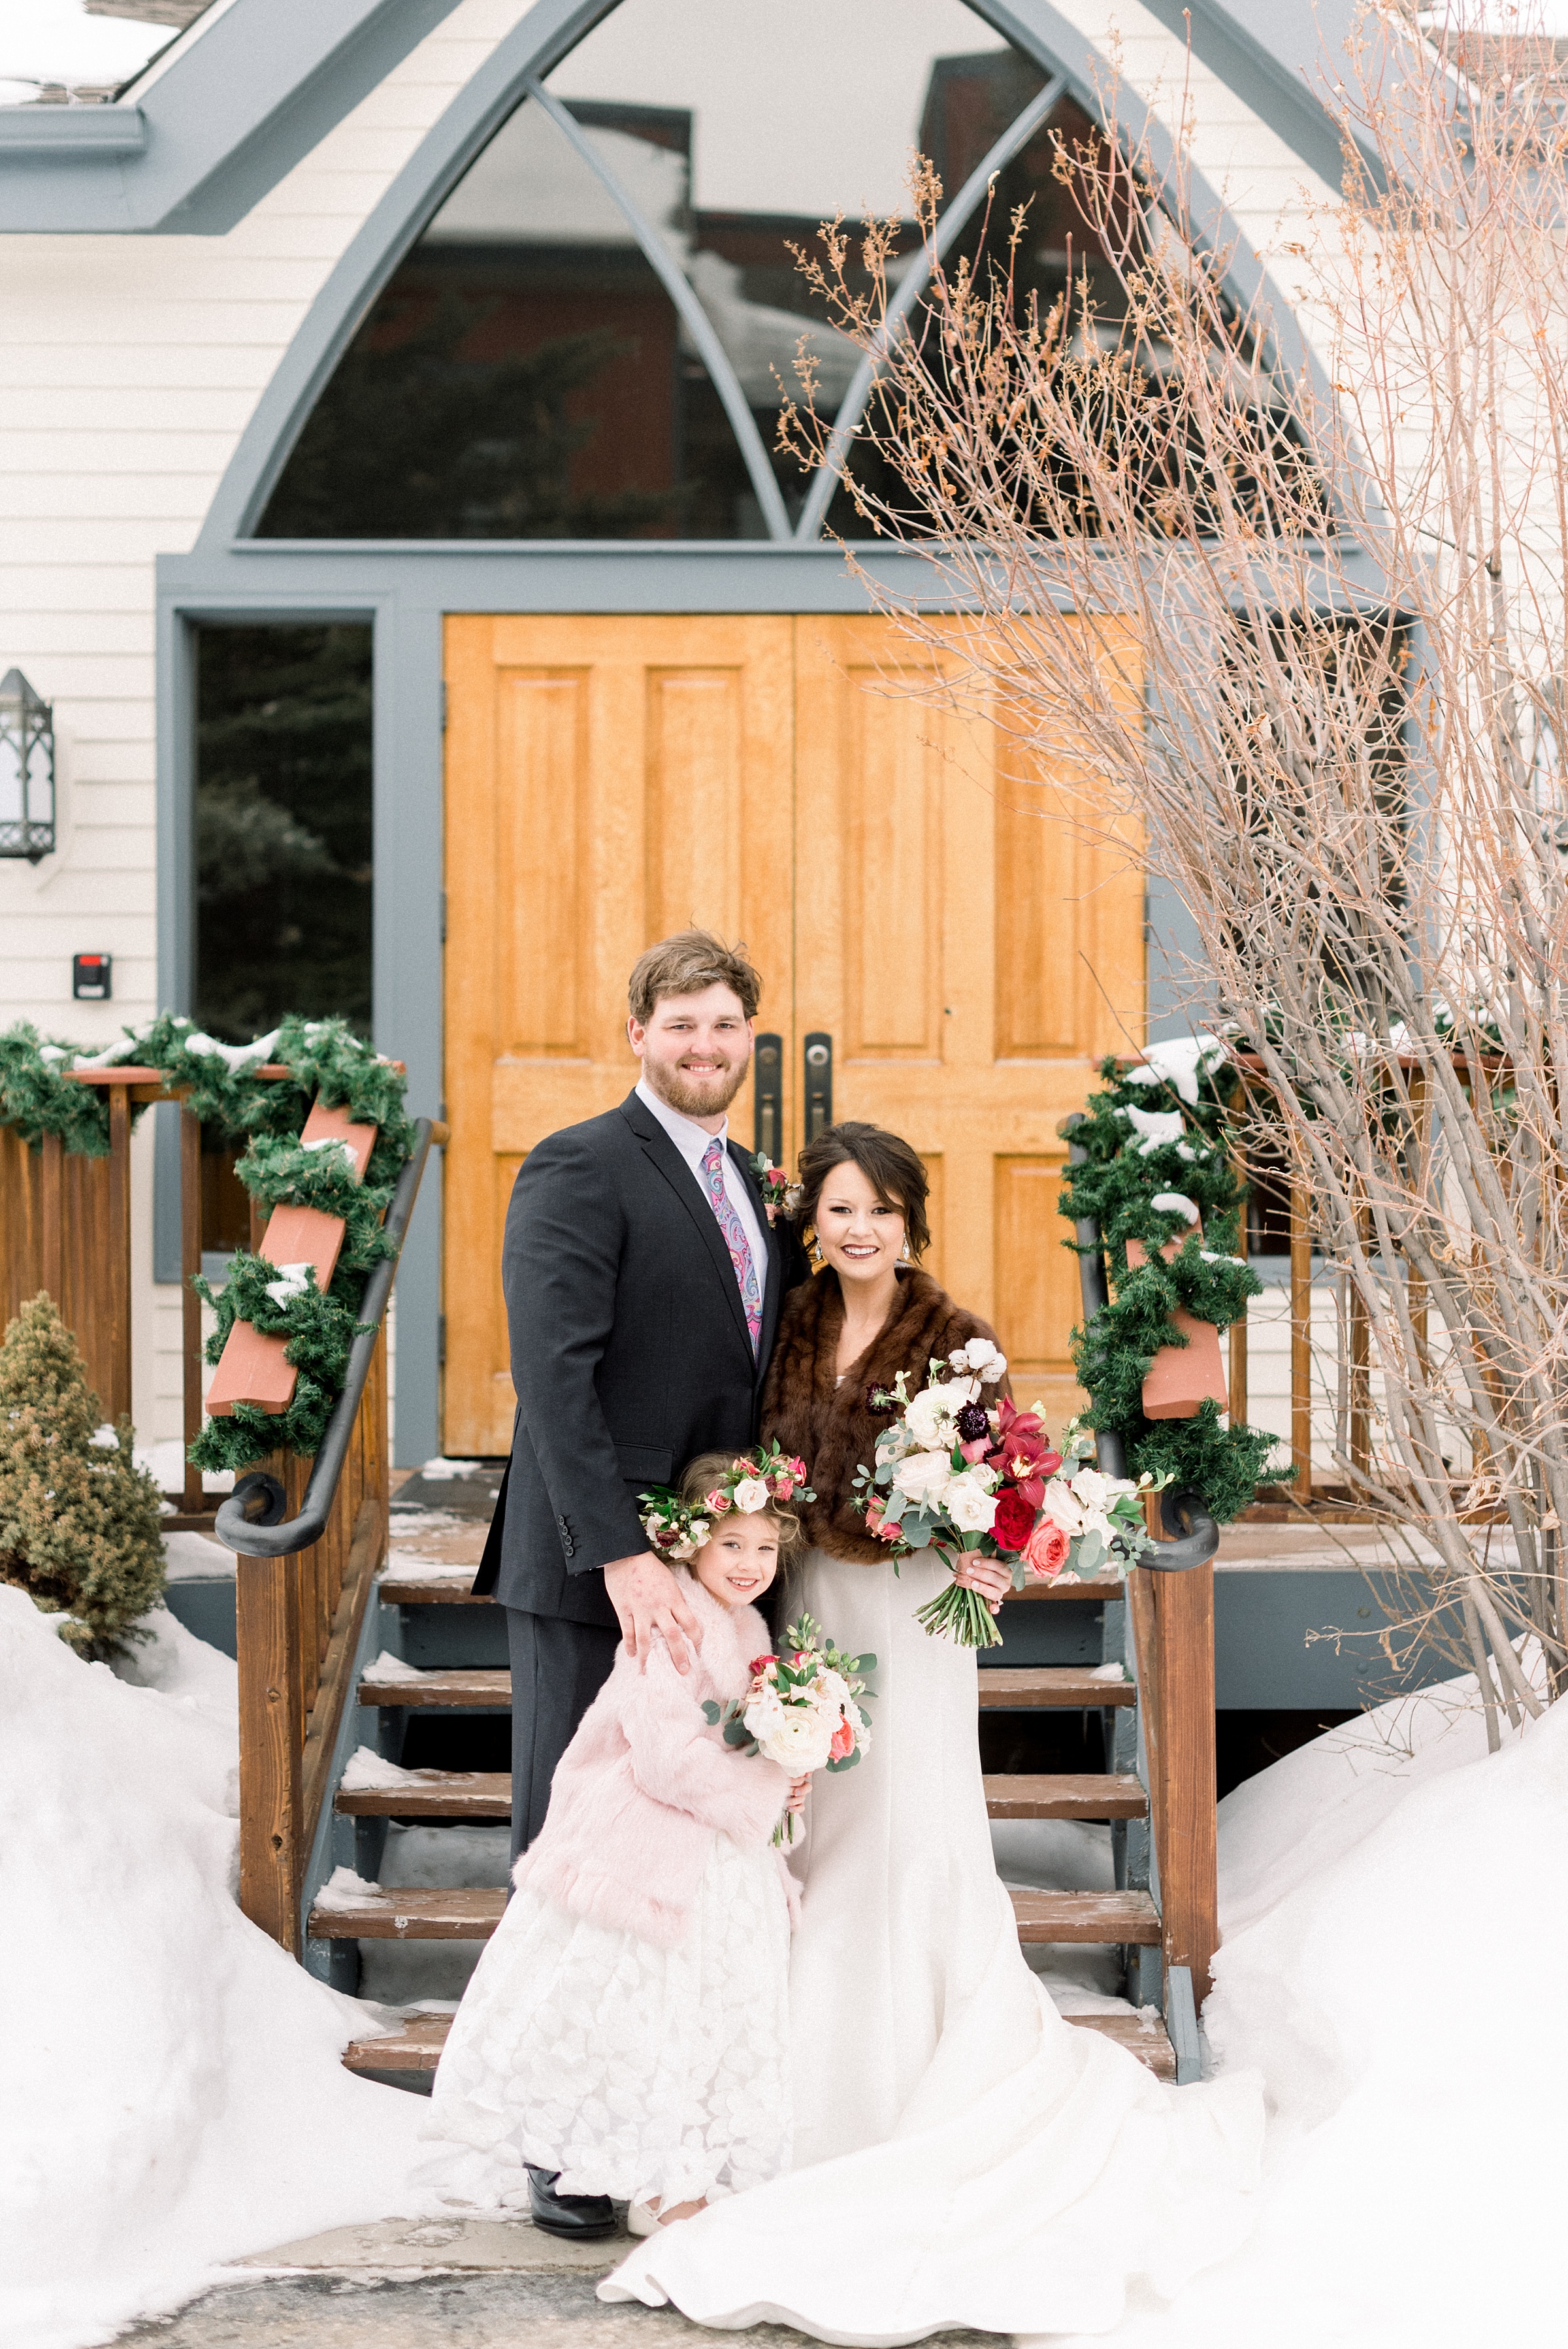 Colorado winter wedding